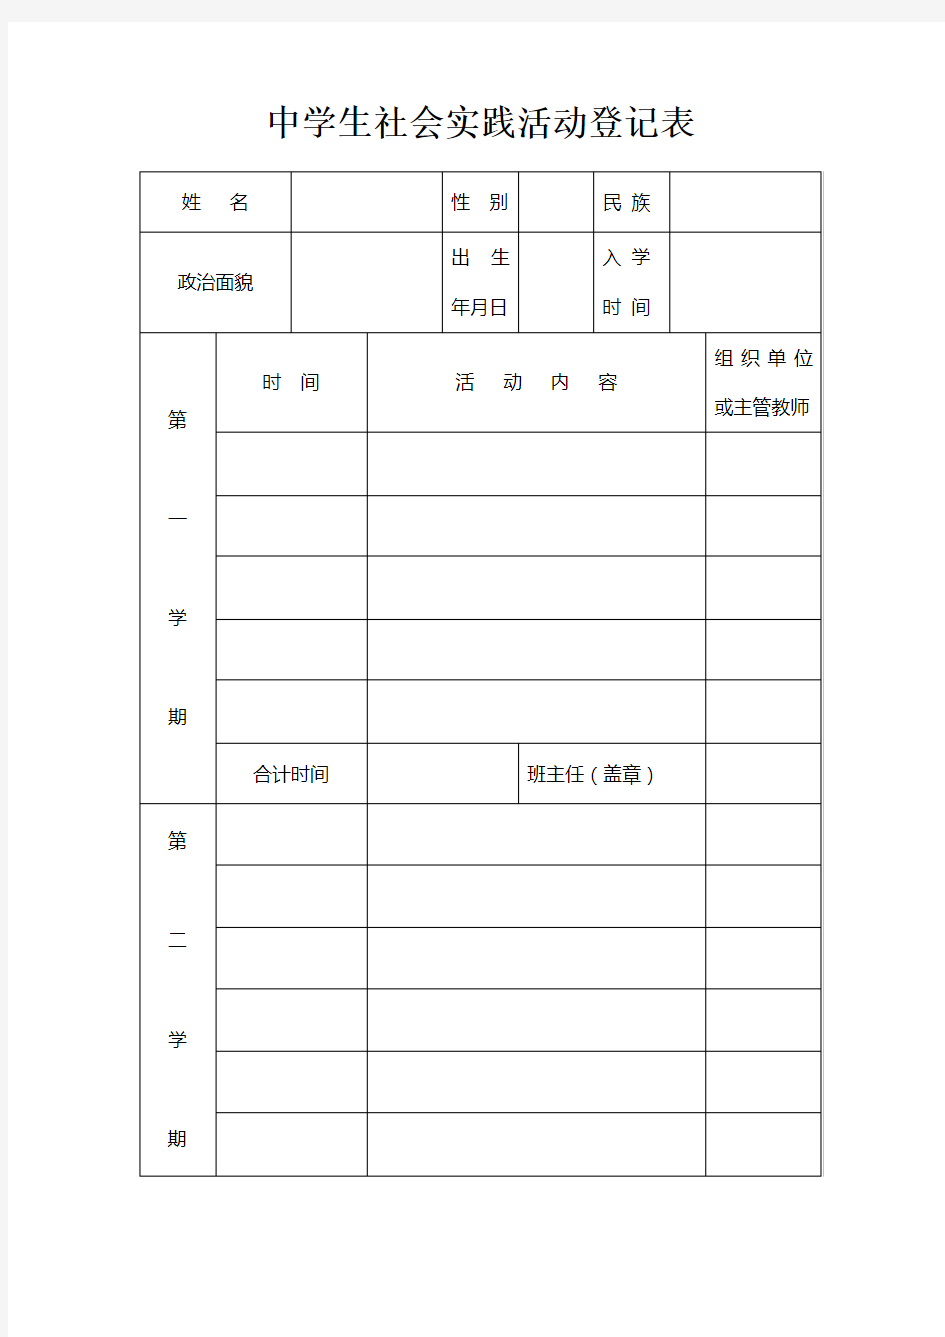 中学生社会实践活动登记表